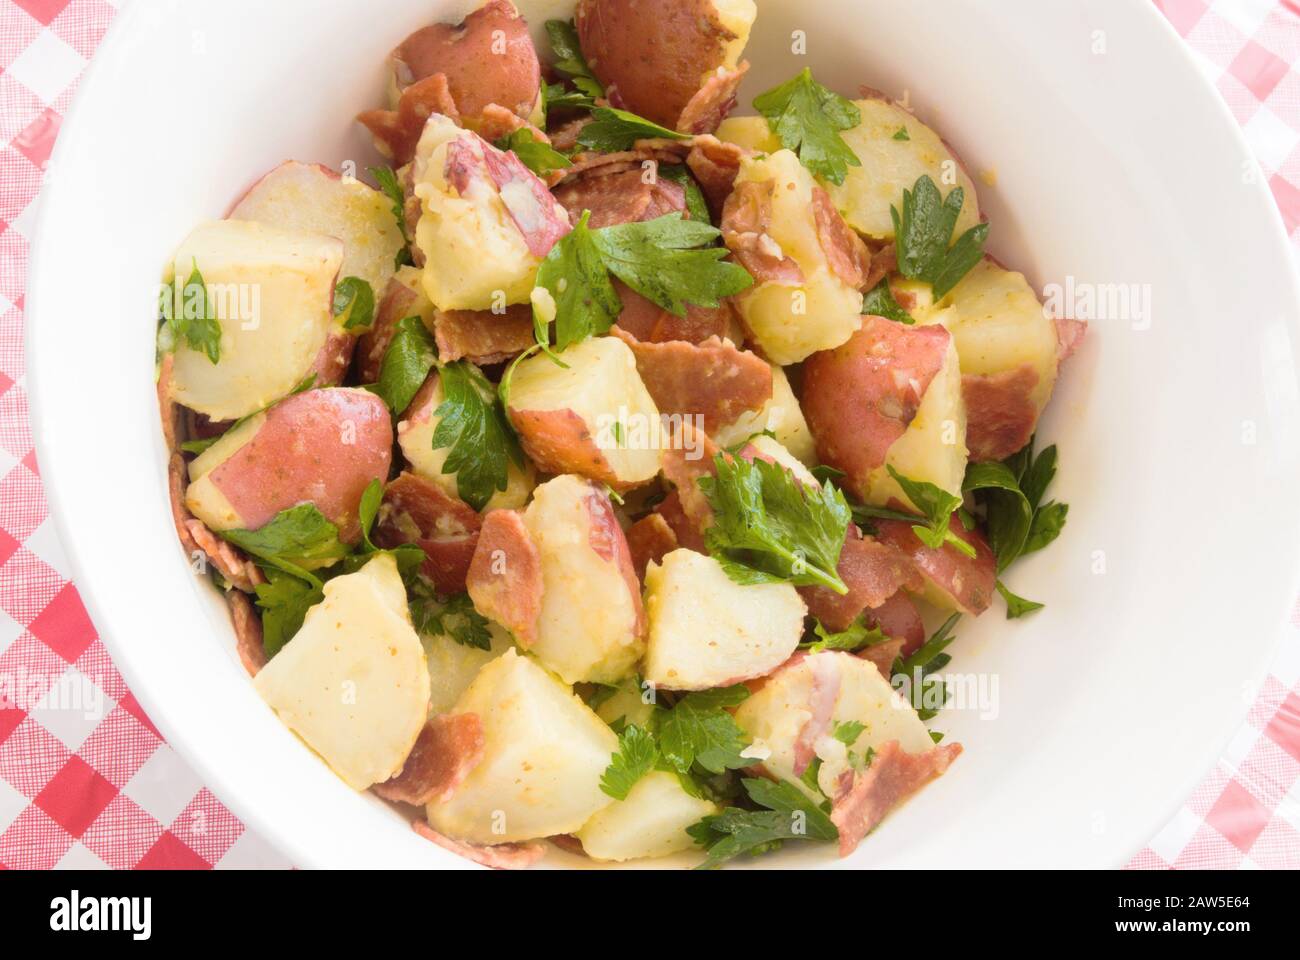 Vista superior de ensalada de patata casera sana hecha con tocino de pavo y un aderezo de vinagreta. Foto de stock